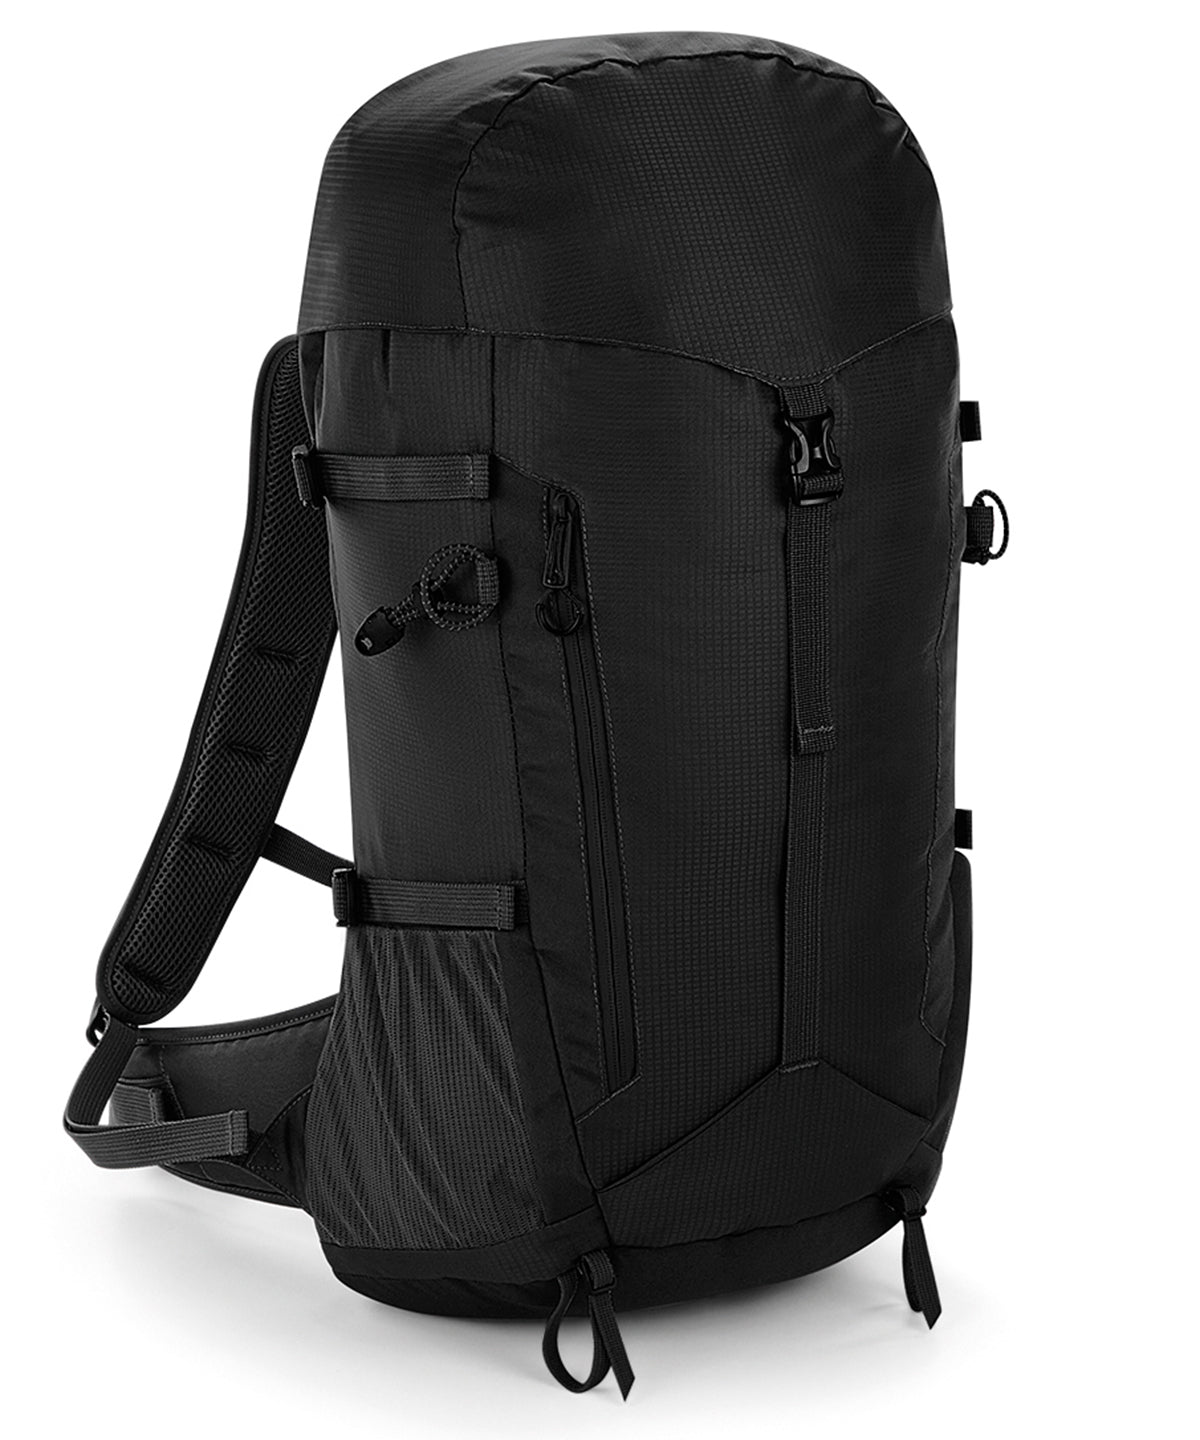 Töskur - SLX®-lite 35 Litre Backpack